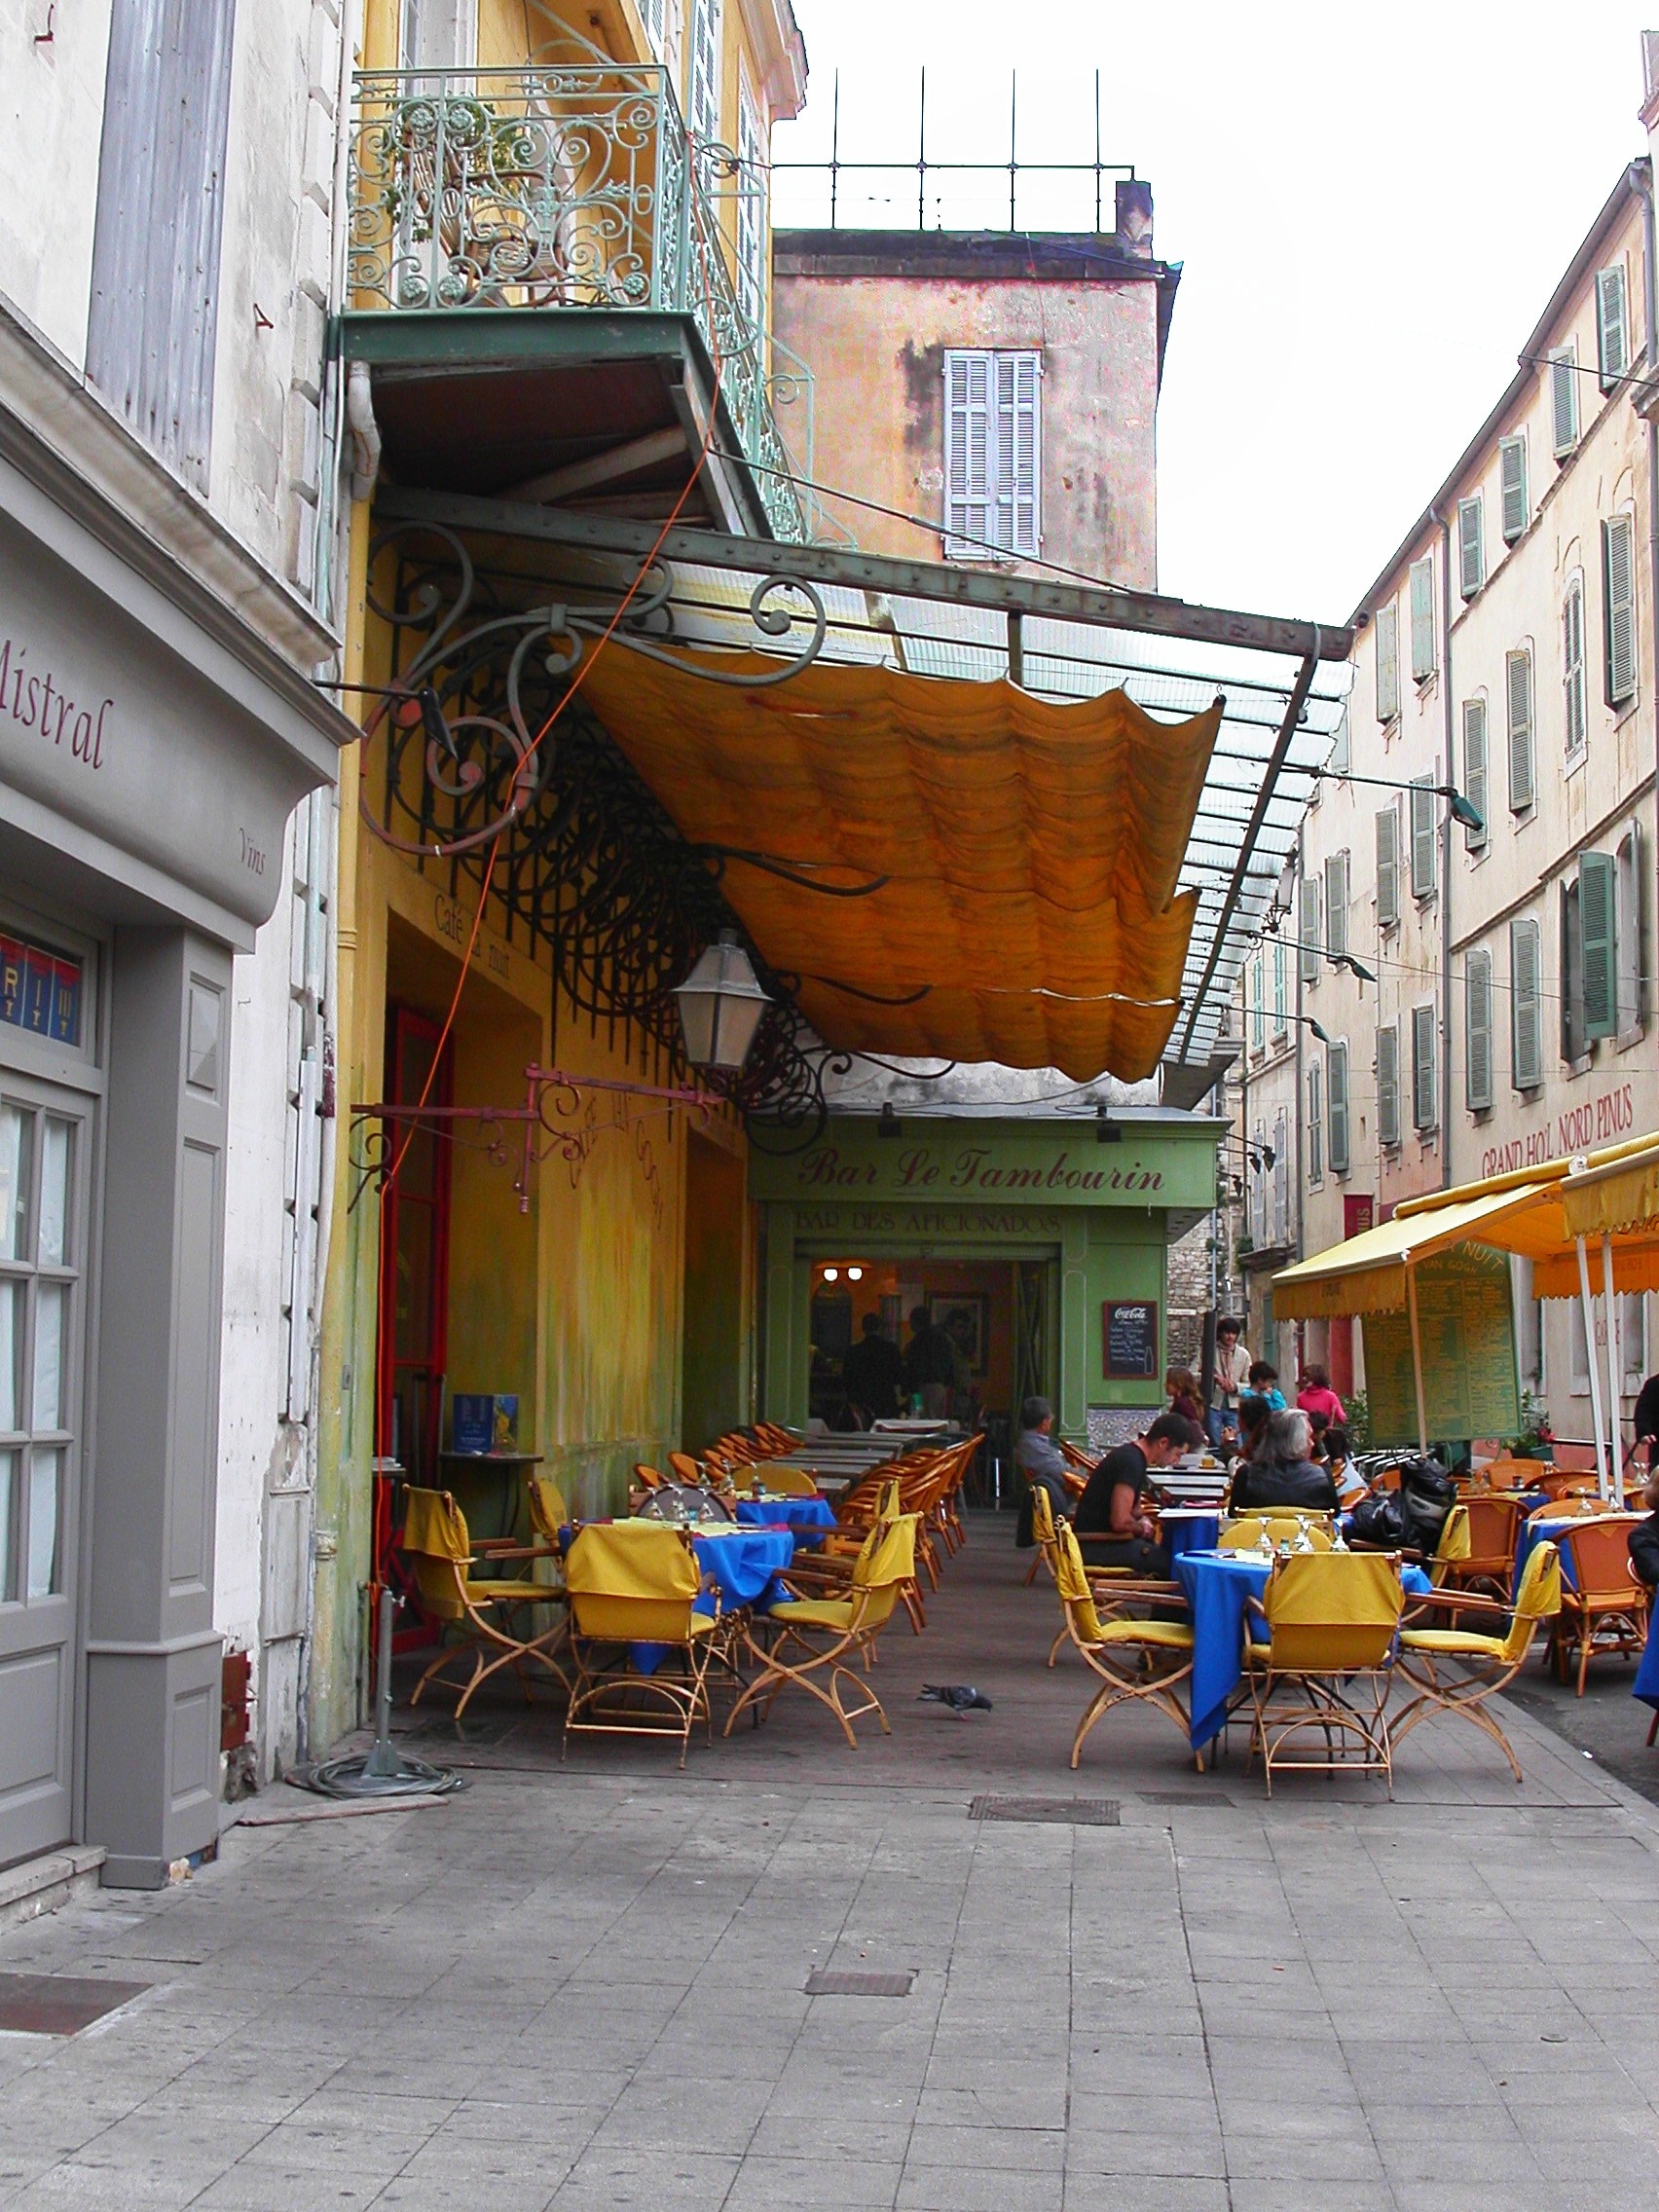 1704x2272 ... Night (Yorck) Van Gogh's Cafe in Arles